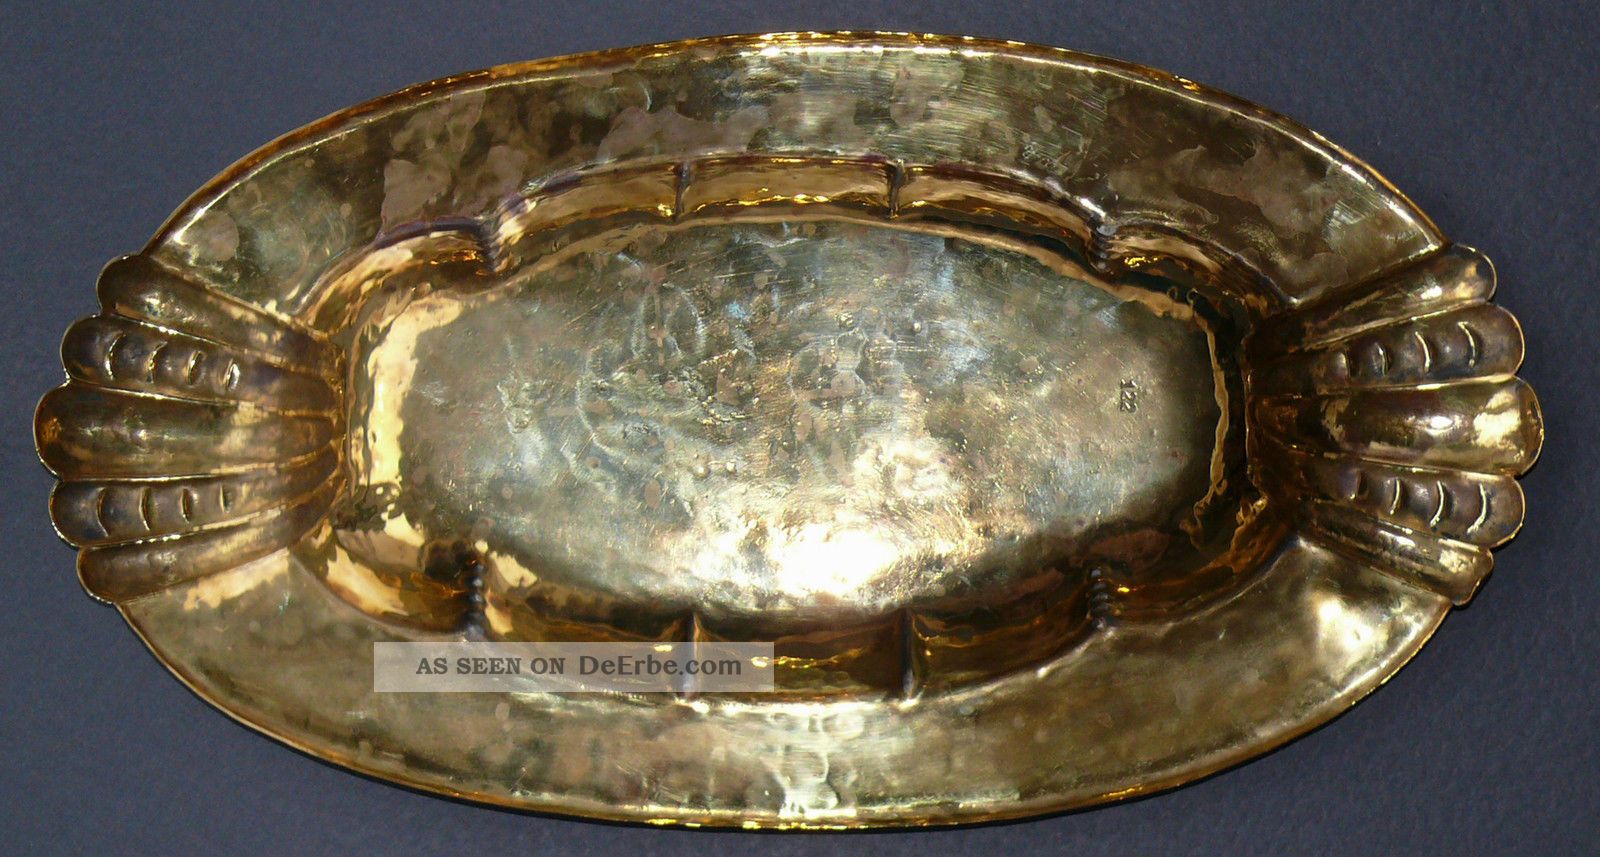 Schöne Verzierte Obstschale, Ca 1900, Sieht Wie Gold Aus (messing? Bronze?)